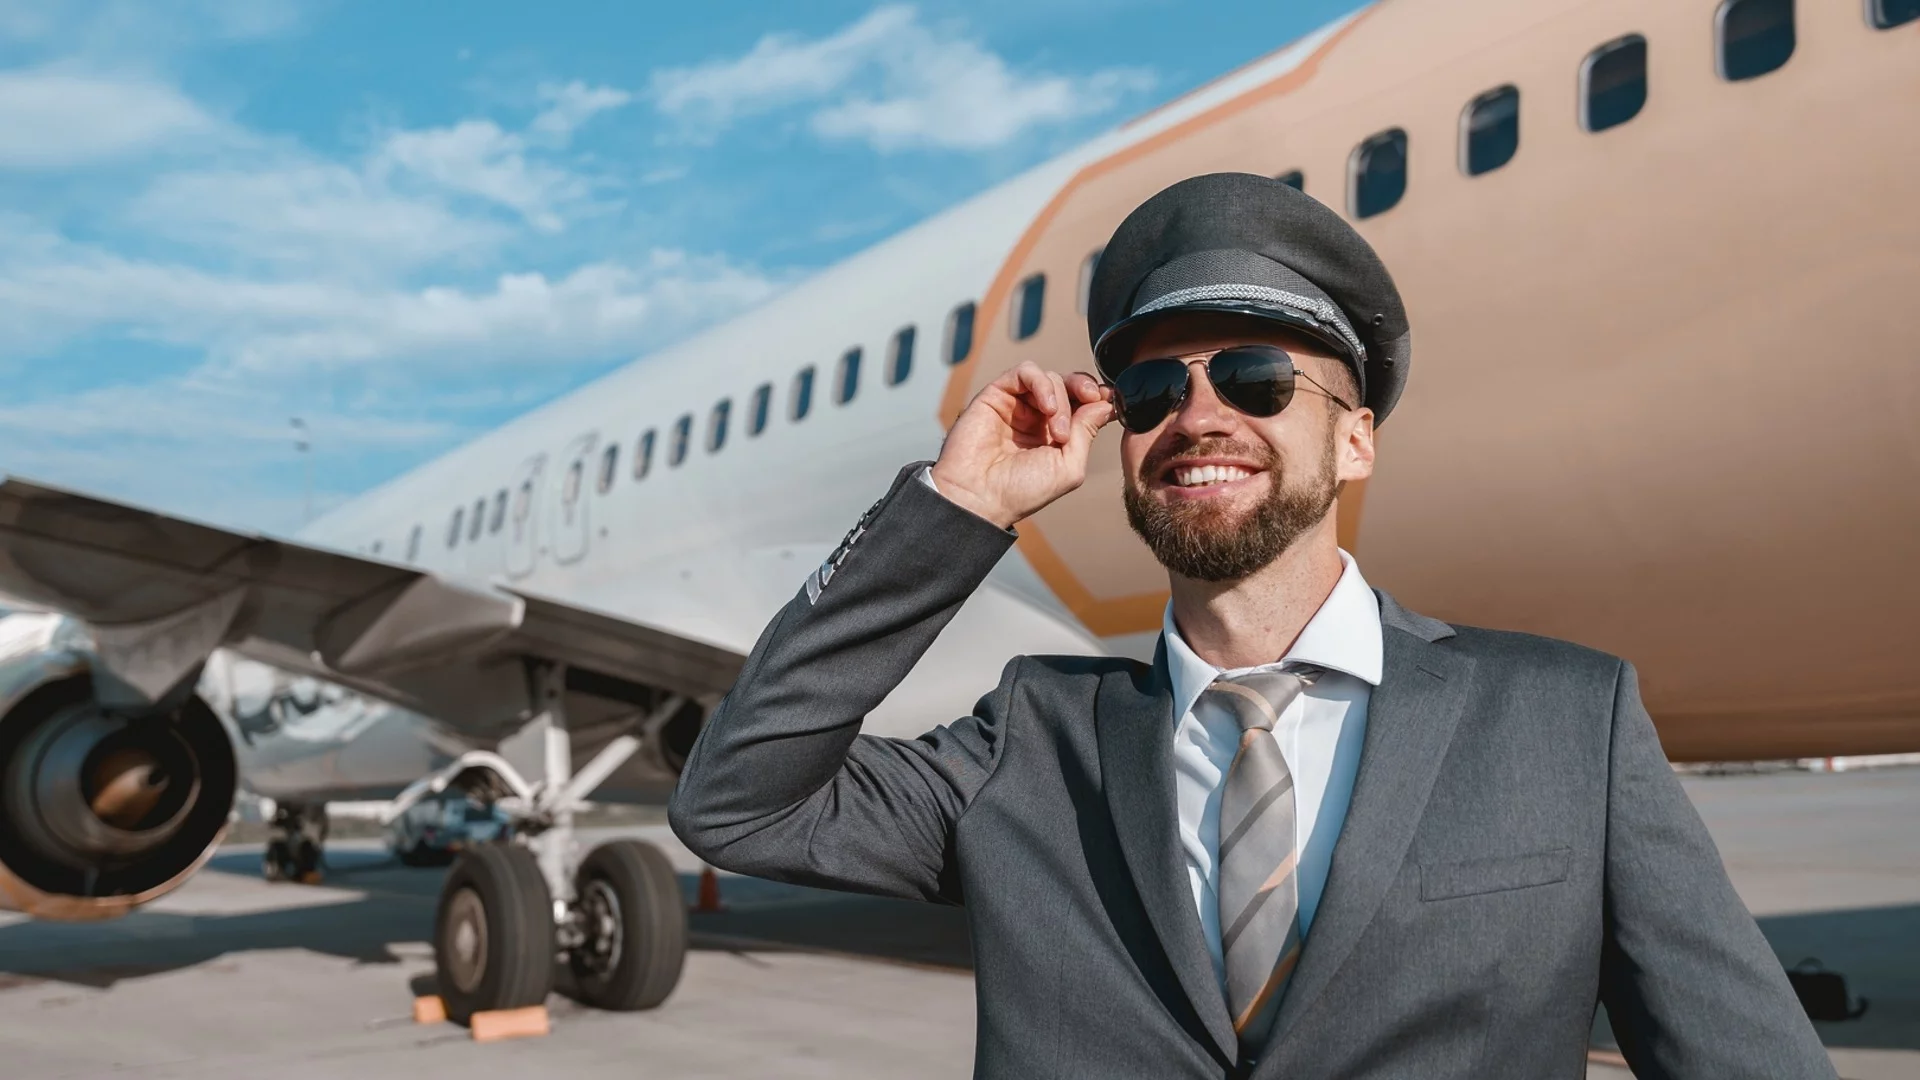 Защо самолетните компании не позволяват на пилотите да имат бради? 